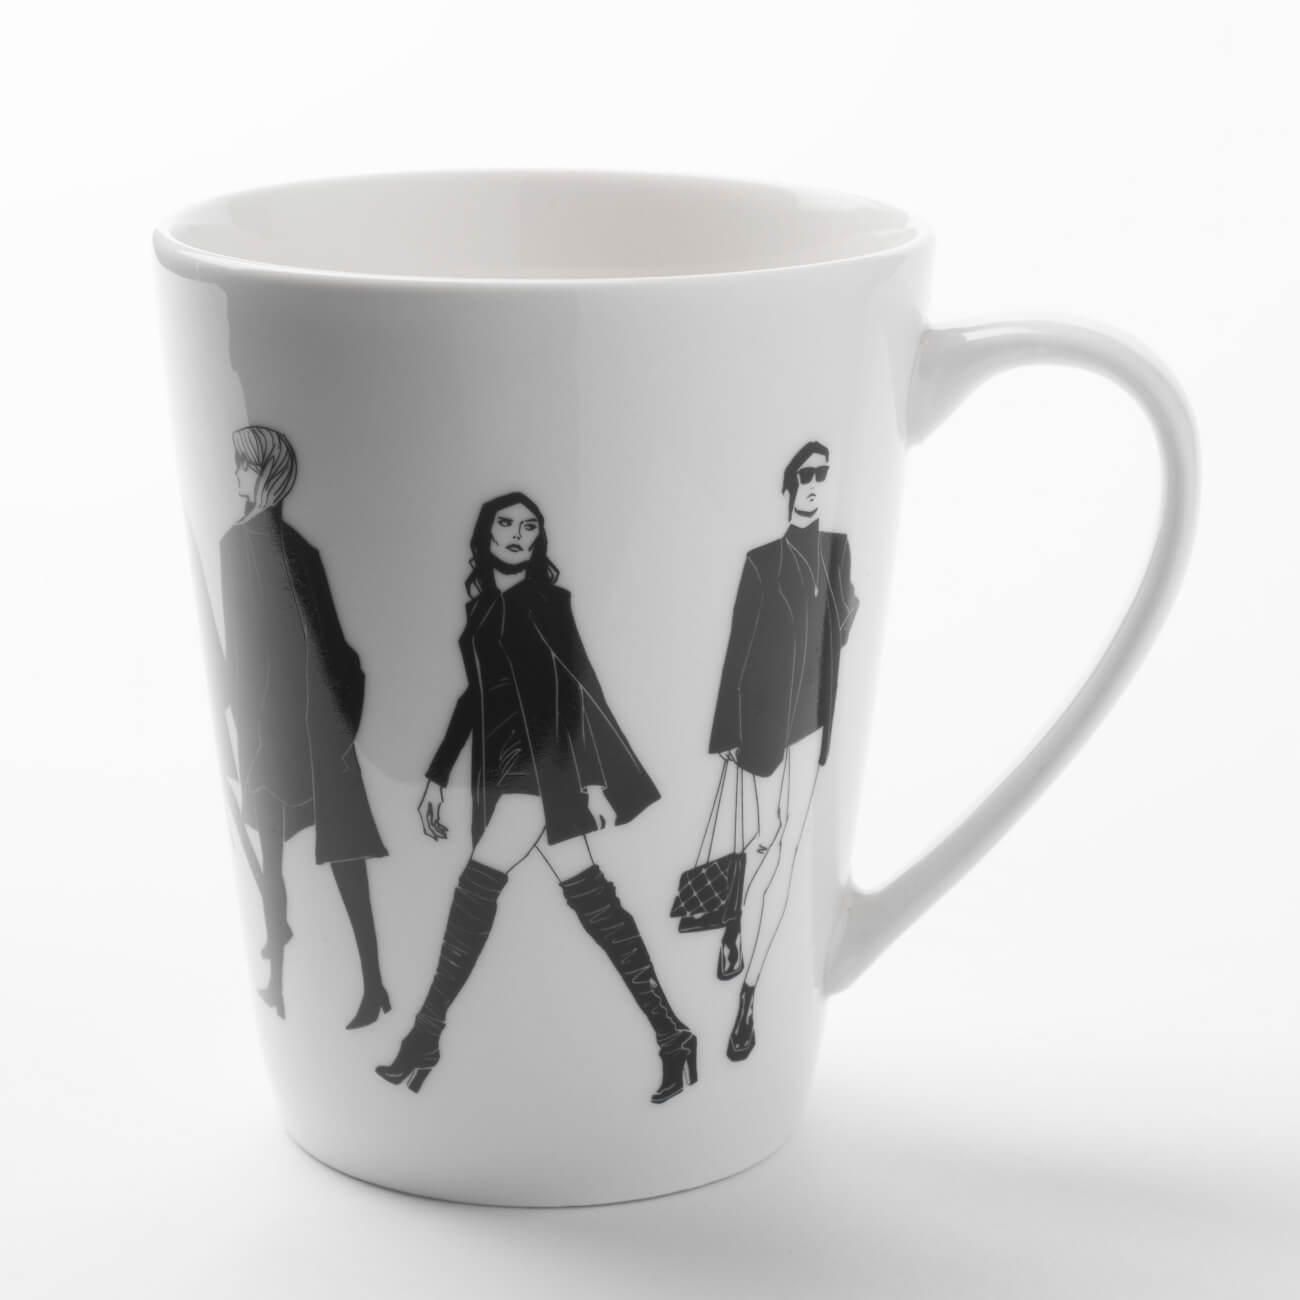 Mug, 420 ml, porcelain N, White, Girls, Girls изображение № 1